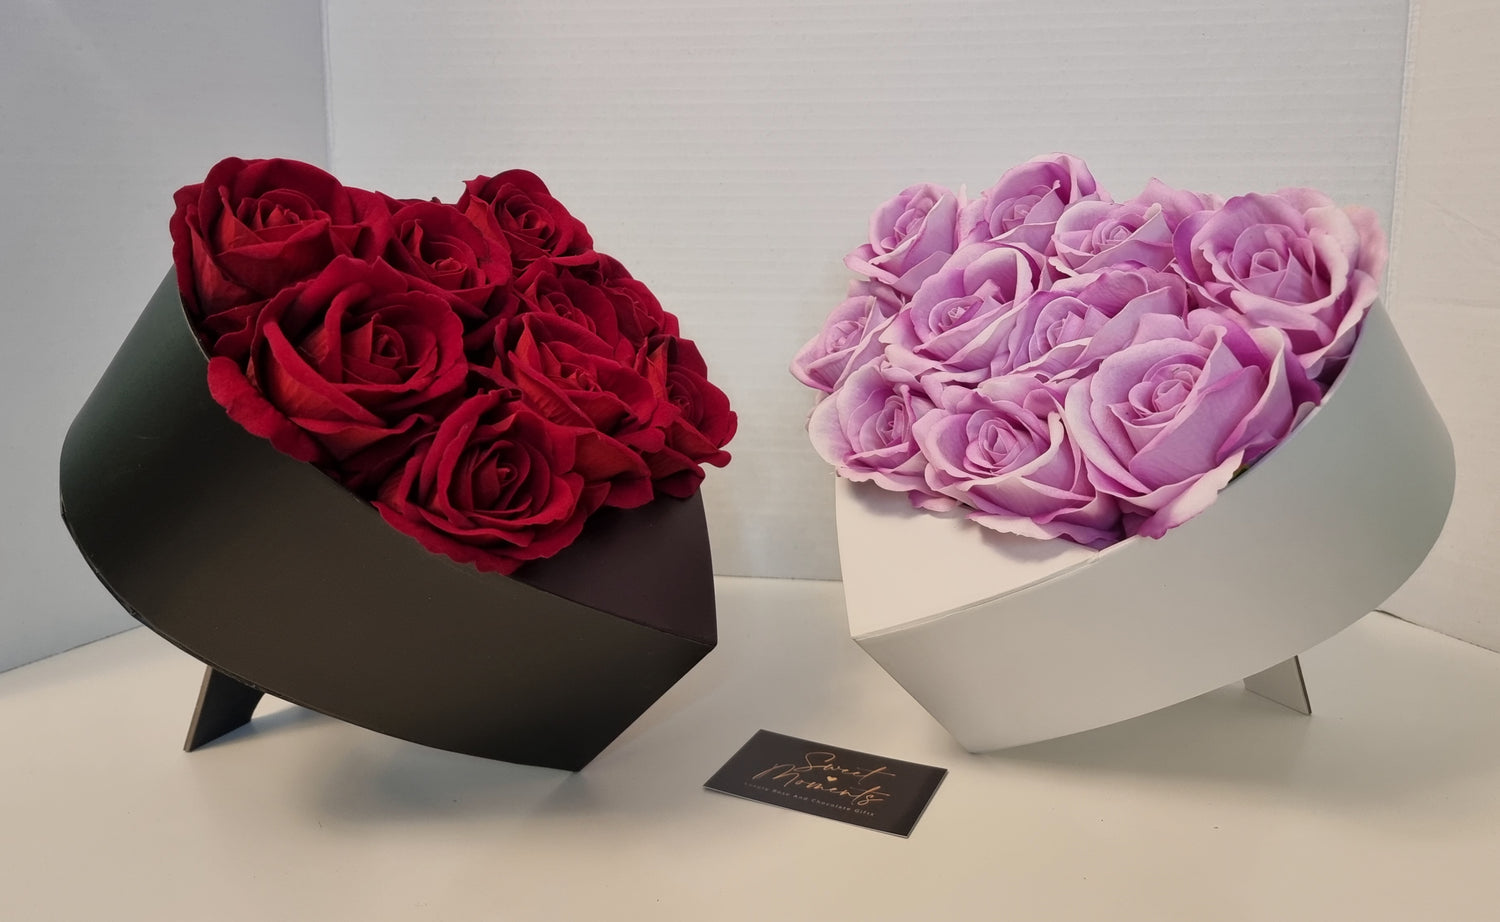 Velvet Heart Shaped Box For Roses